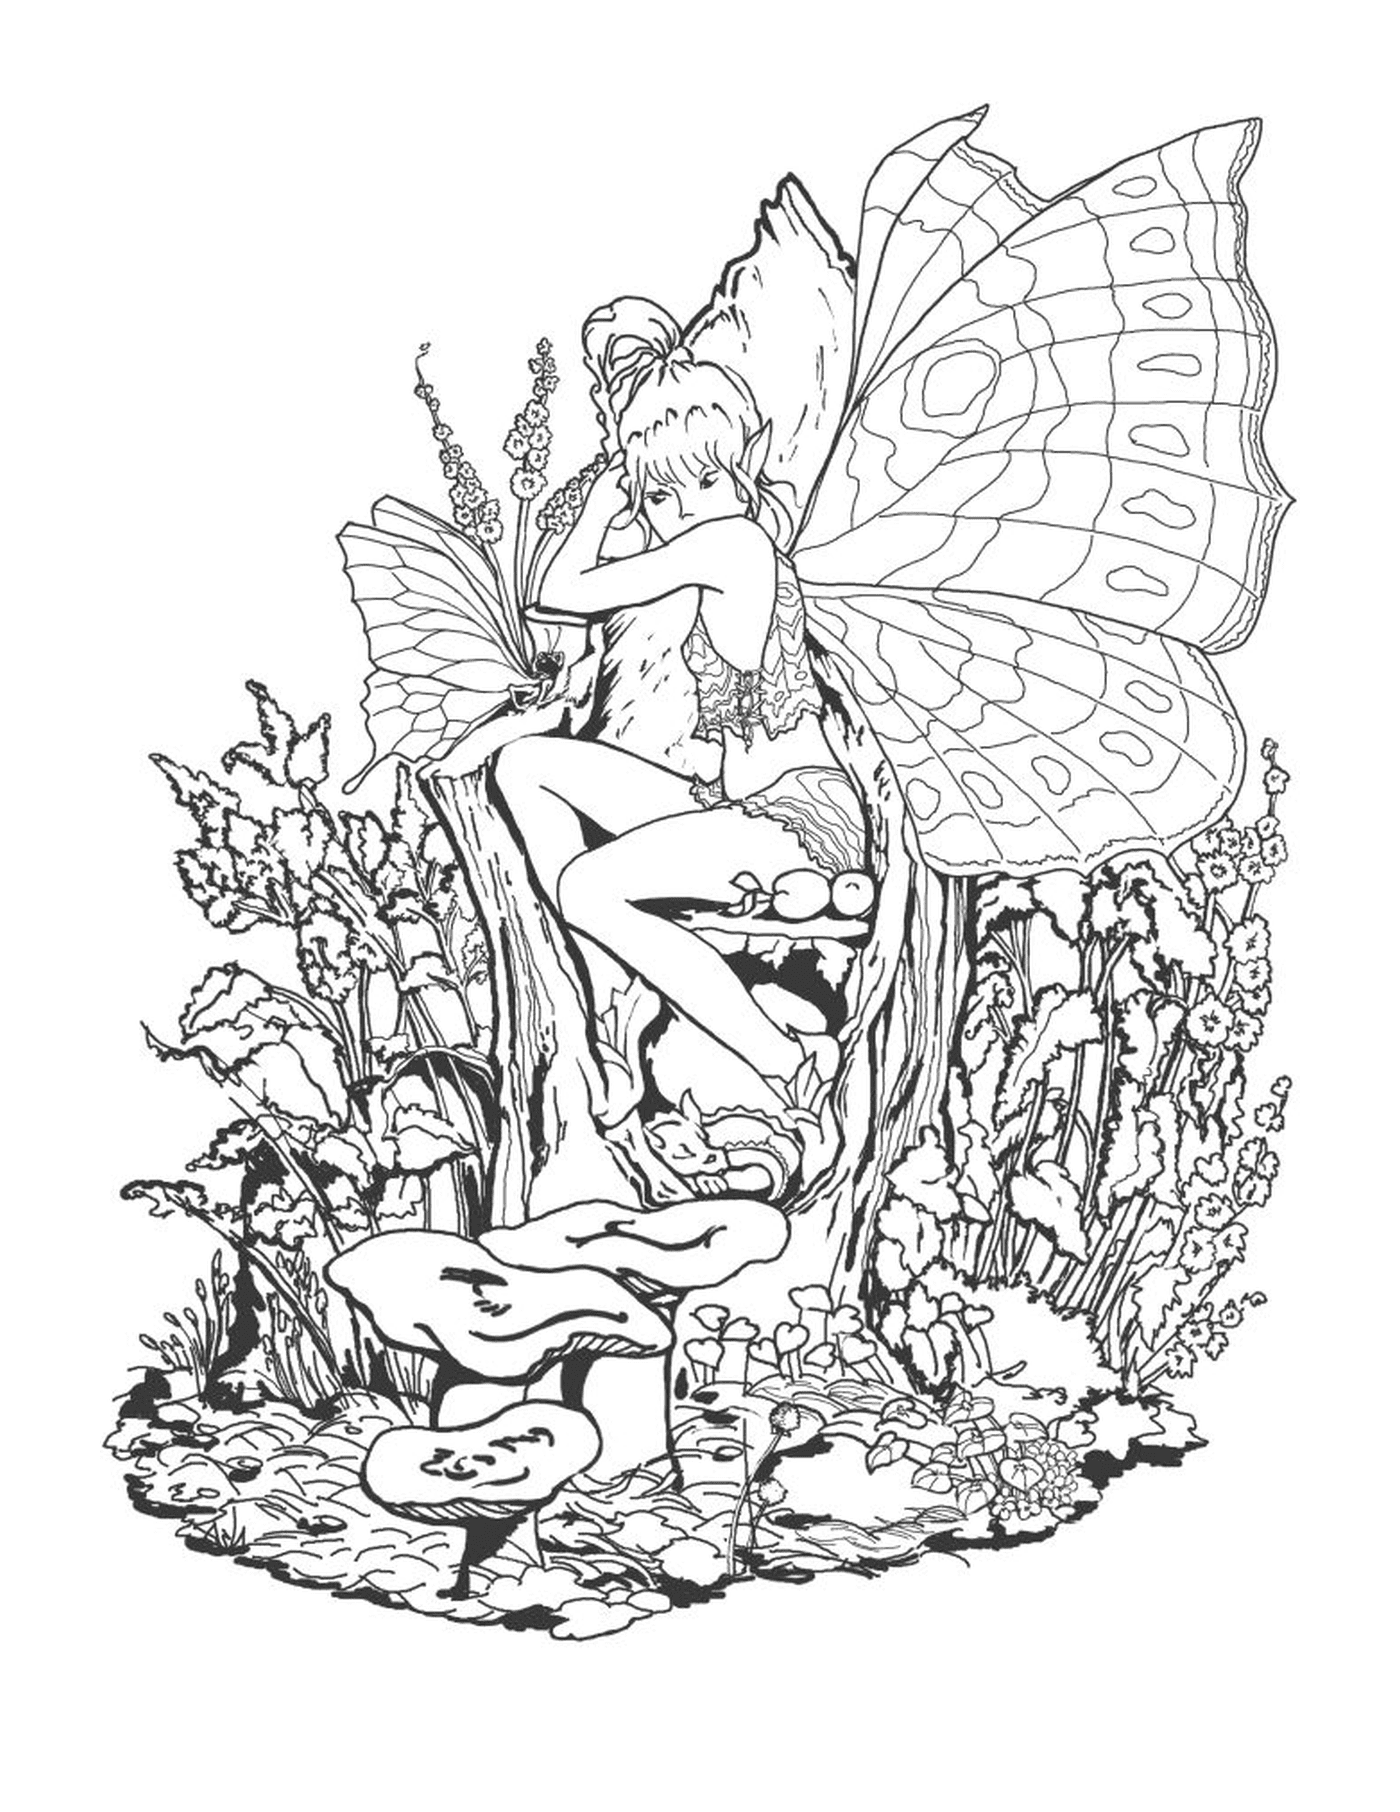  Фея, сидящая на грибе с бабочкой в руке 